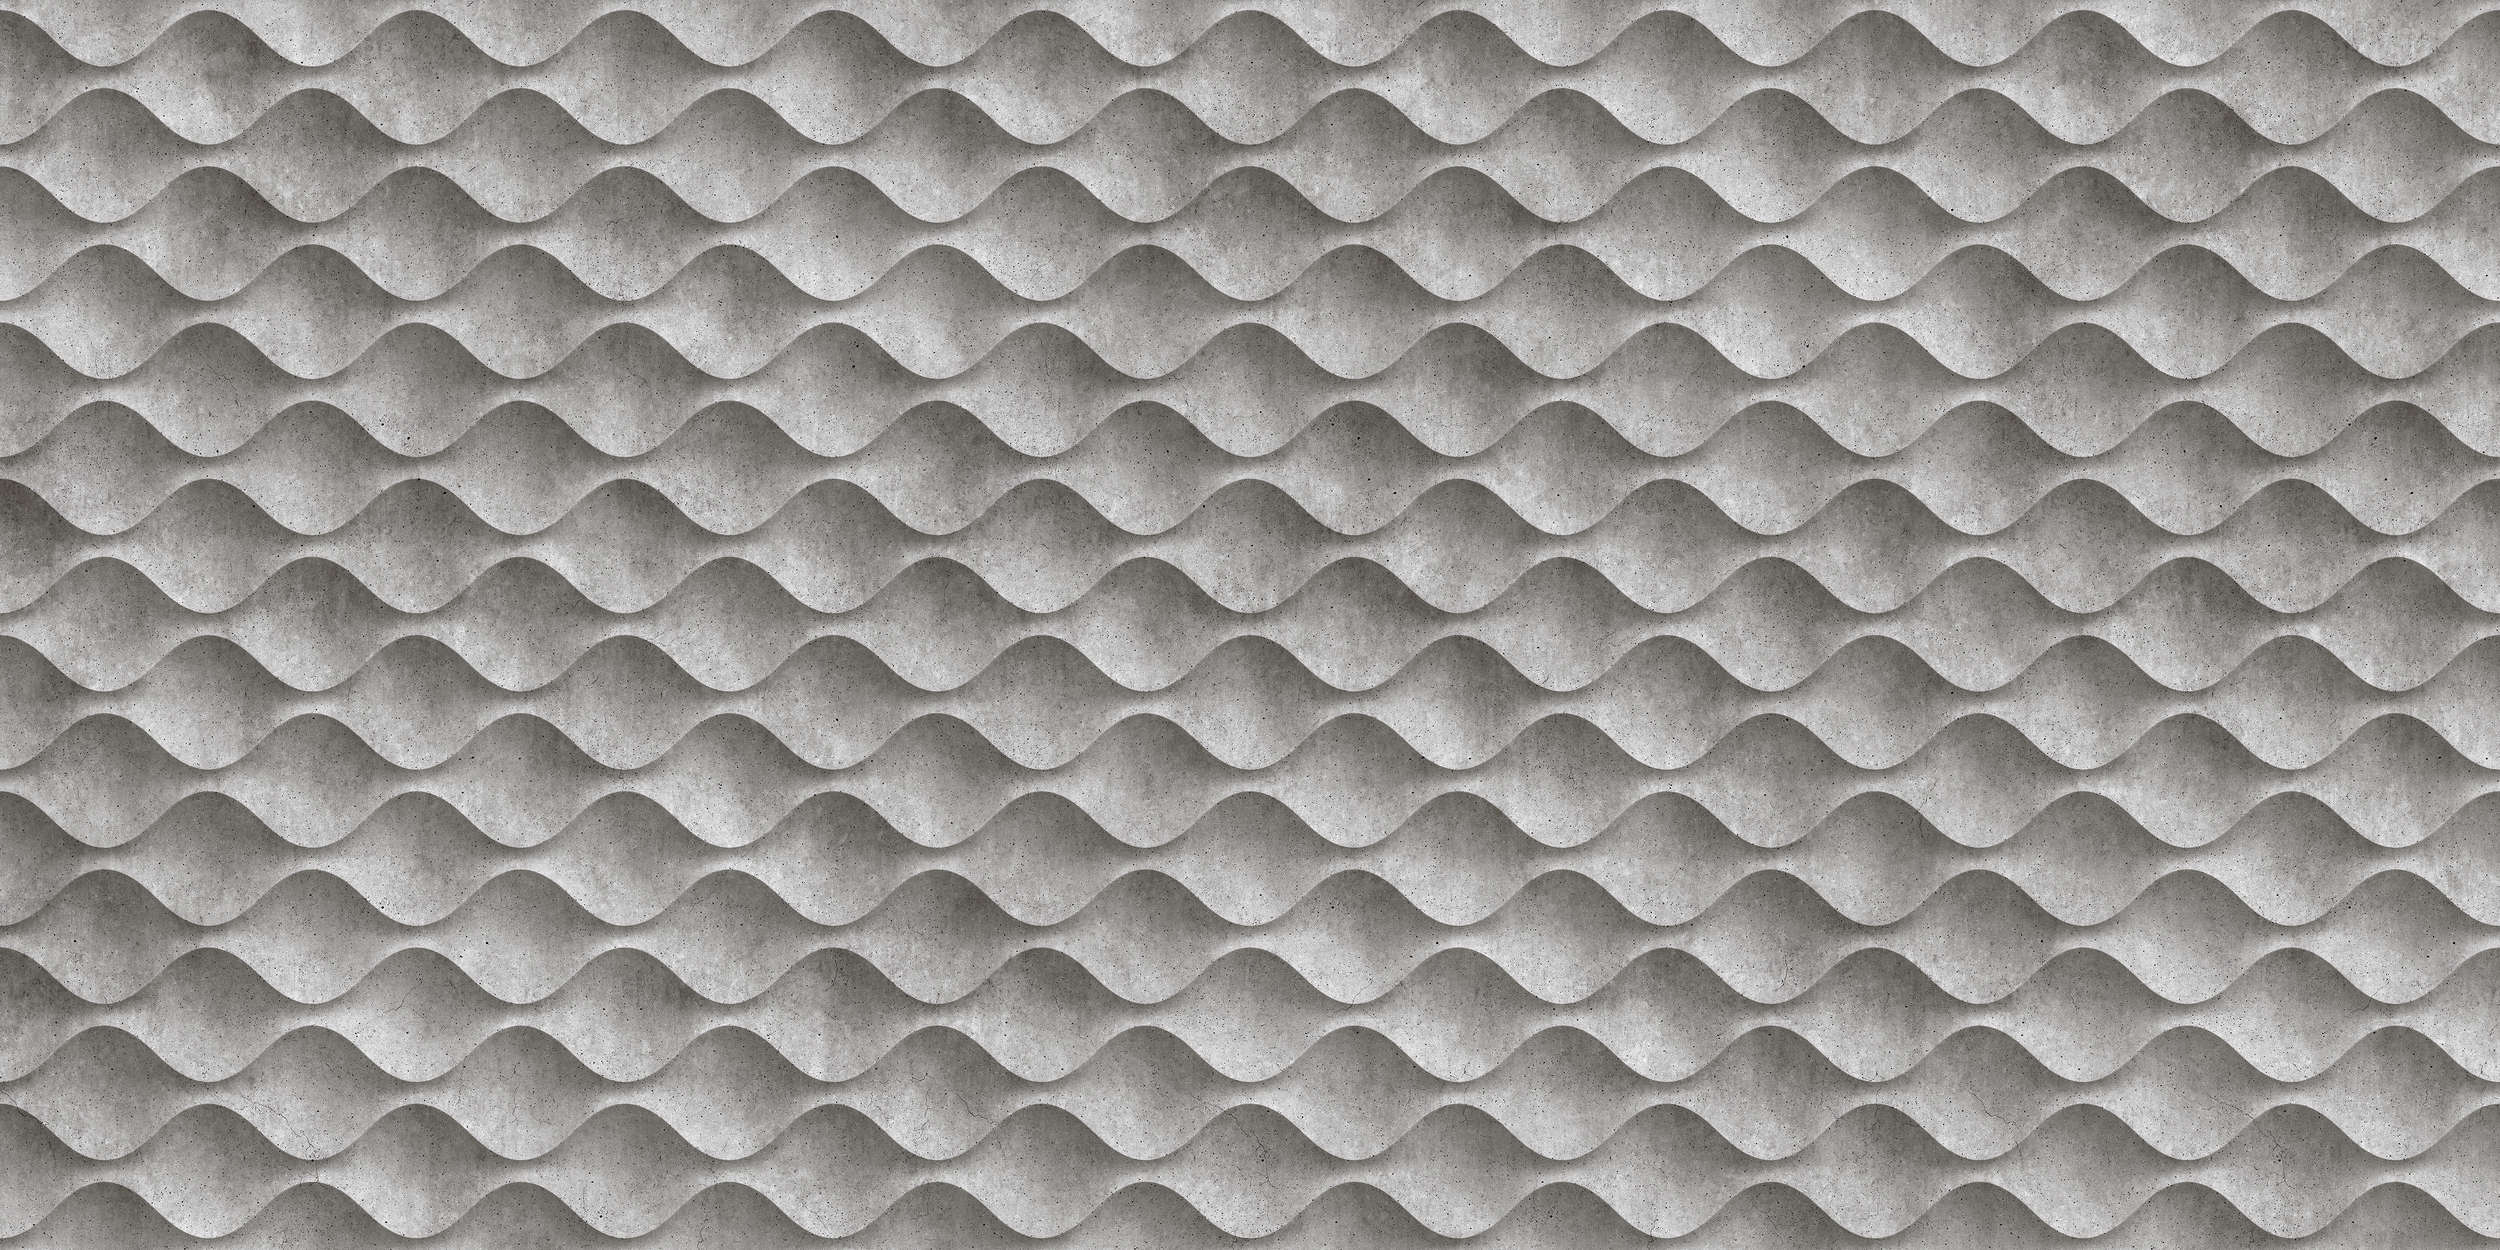             Concrete 1 - Carta da parati 3D con onde di cemento - Grigio, nero e perla in tessuto liscio
        